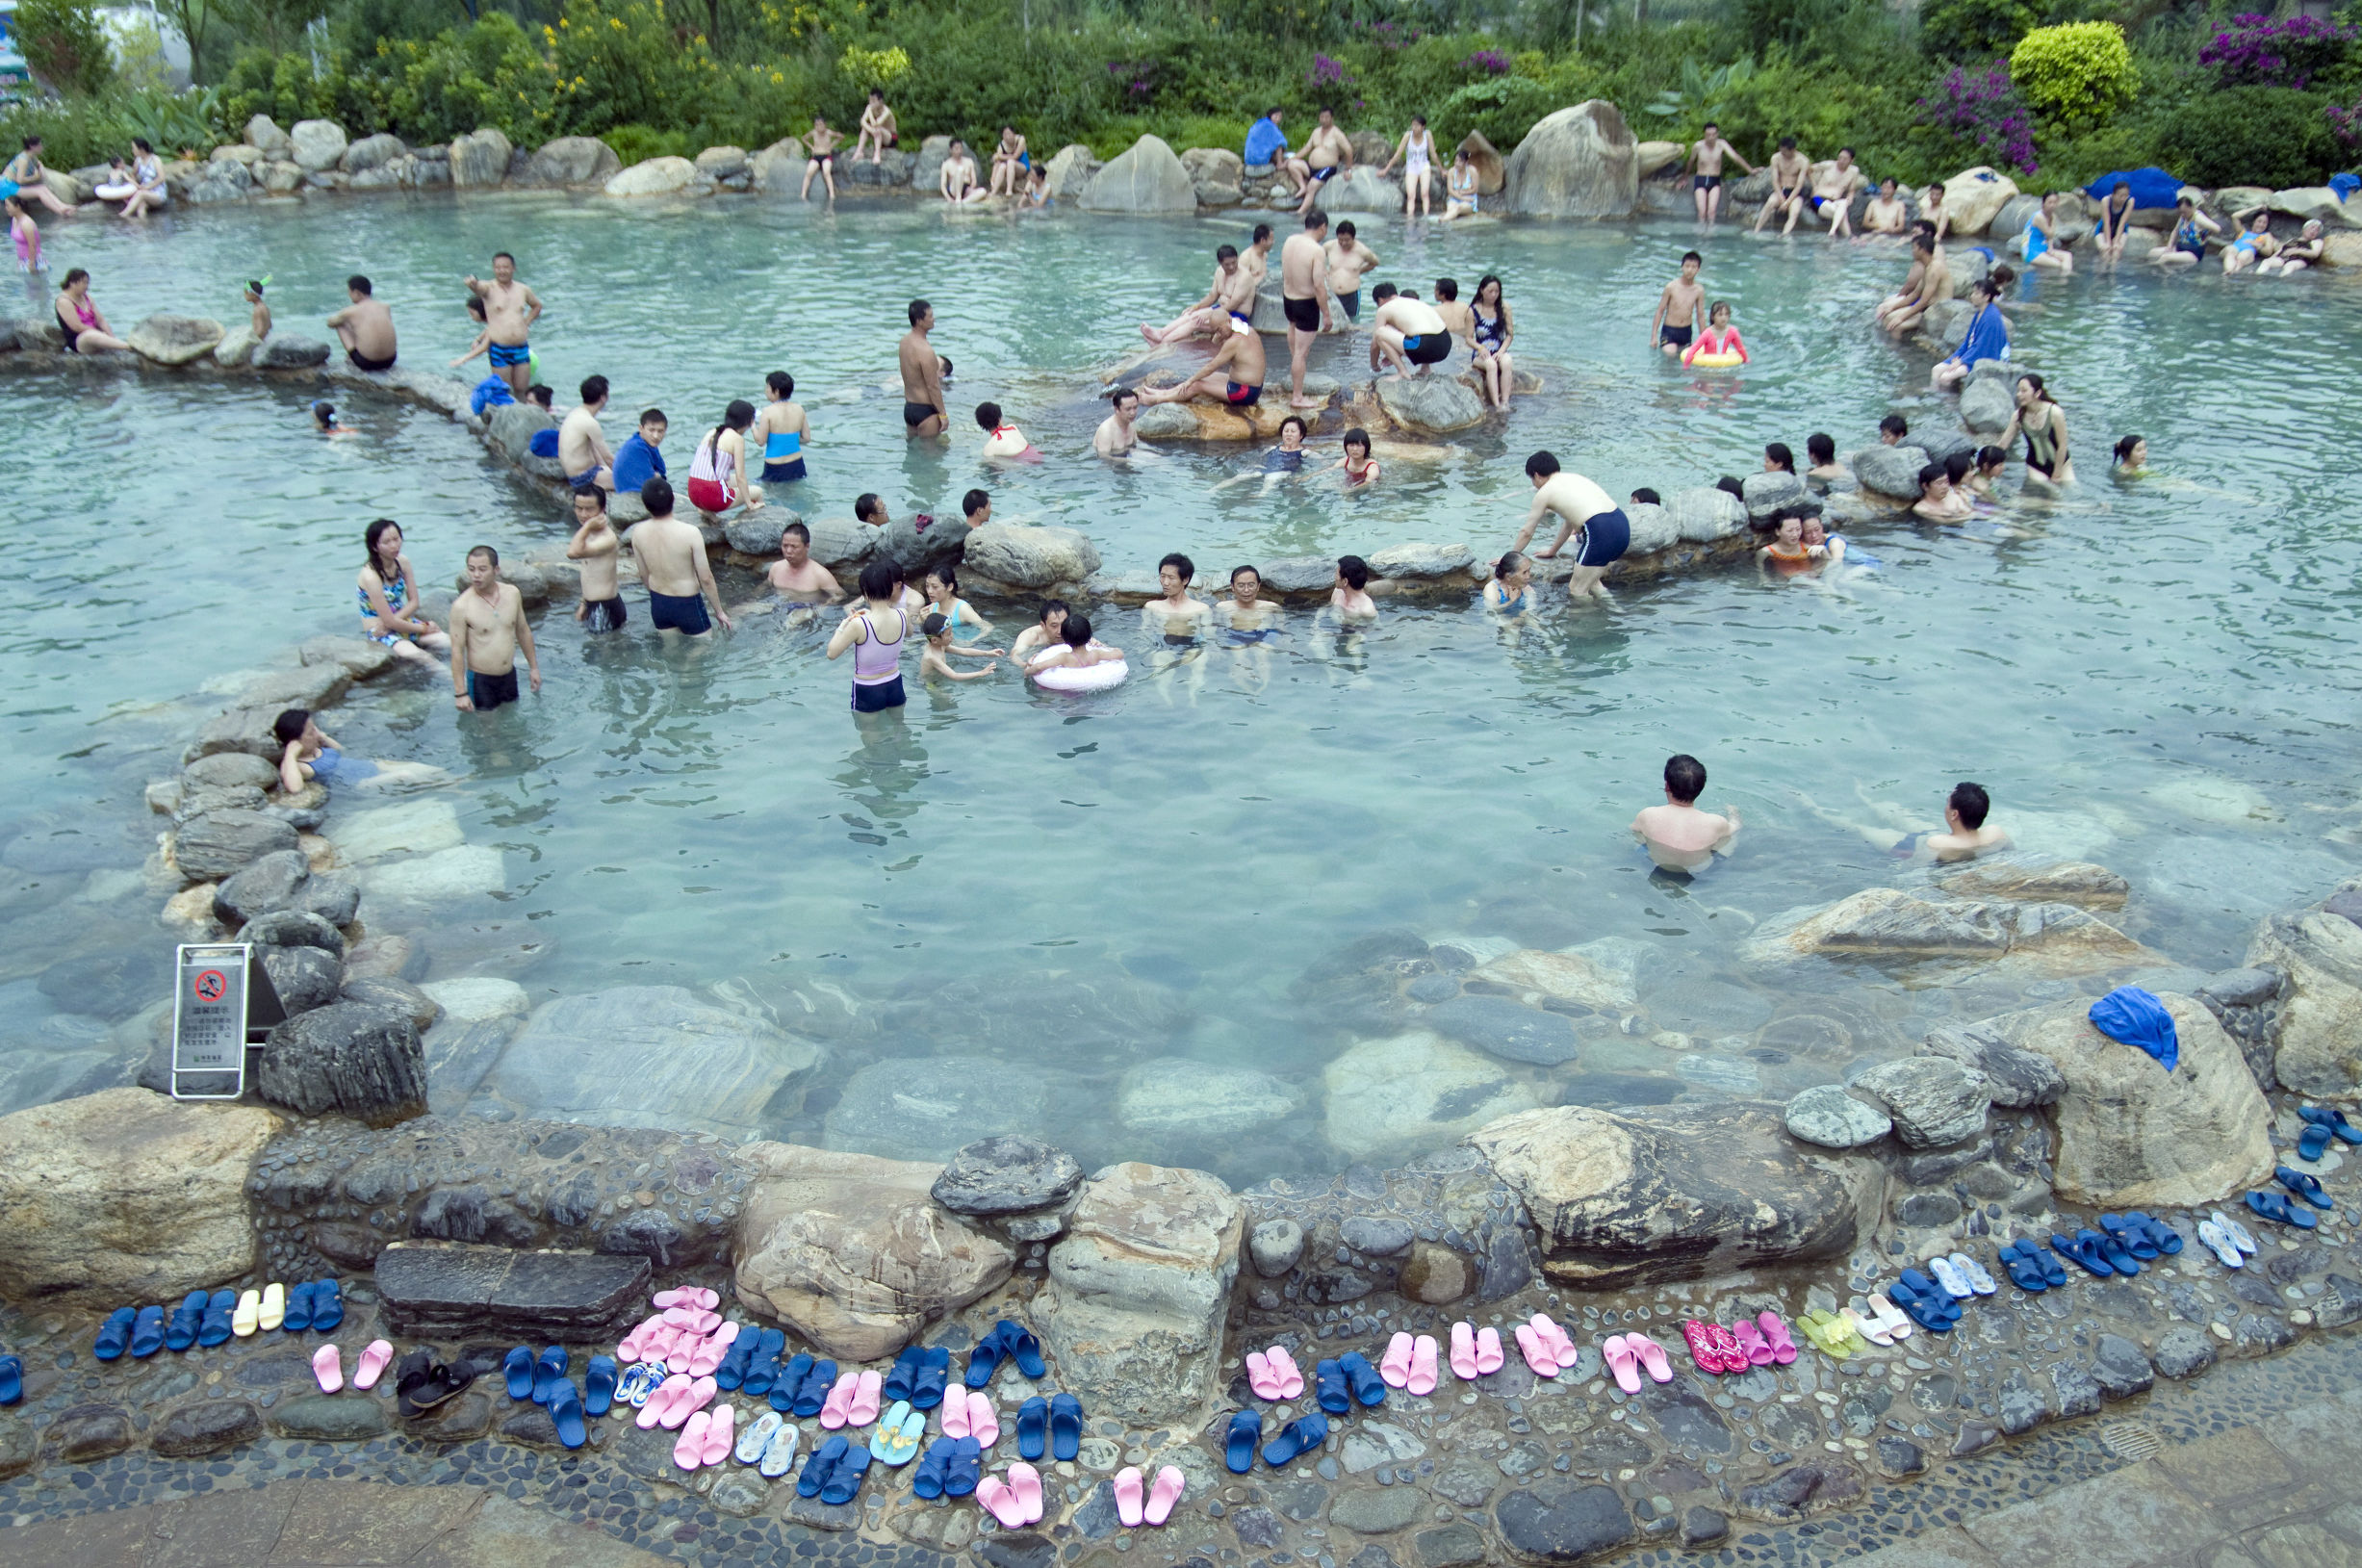 梅花温泉位于云南红河弥勒,古称碧玉温泉,后以县城西梅花寨得名.